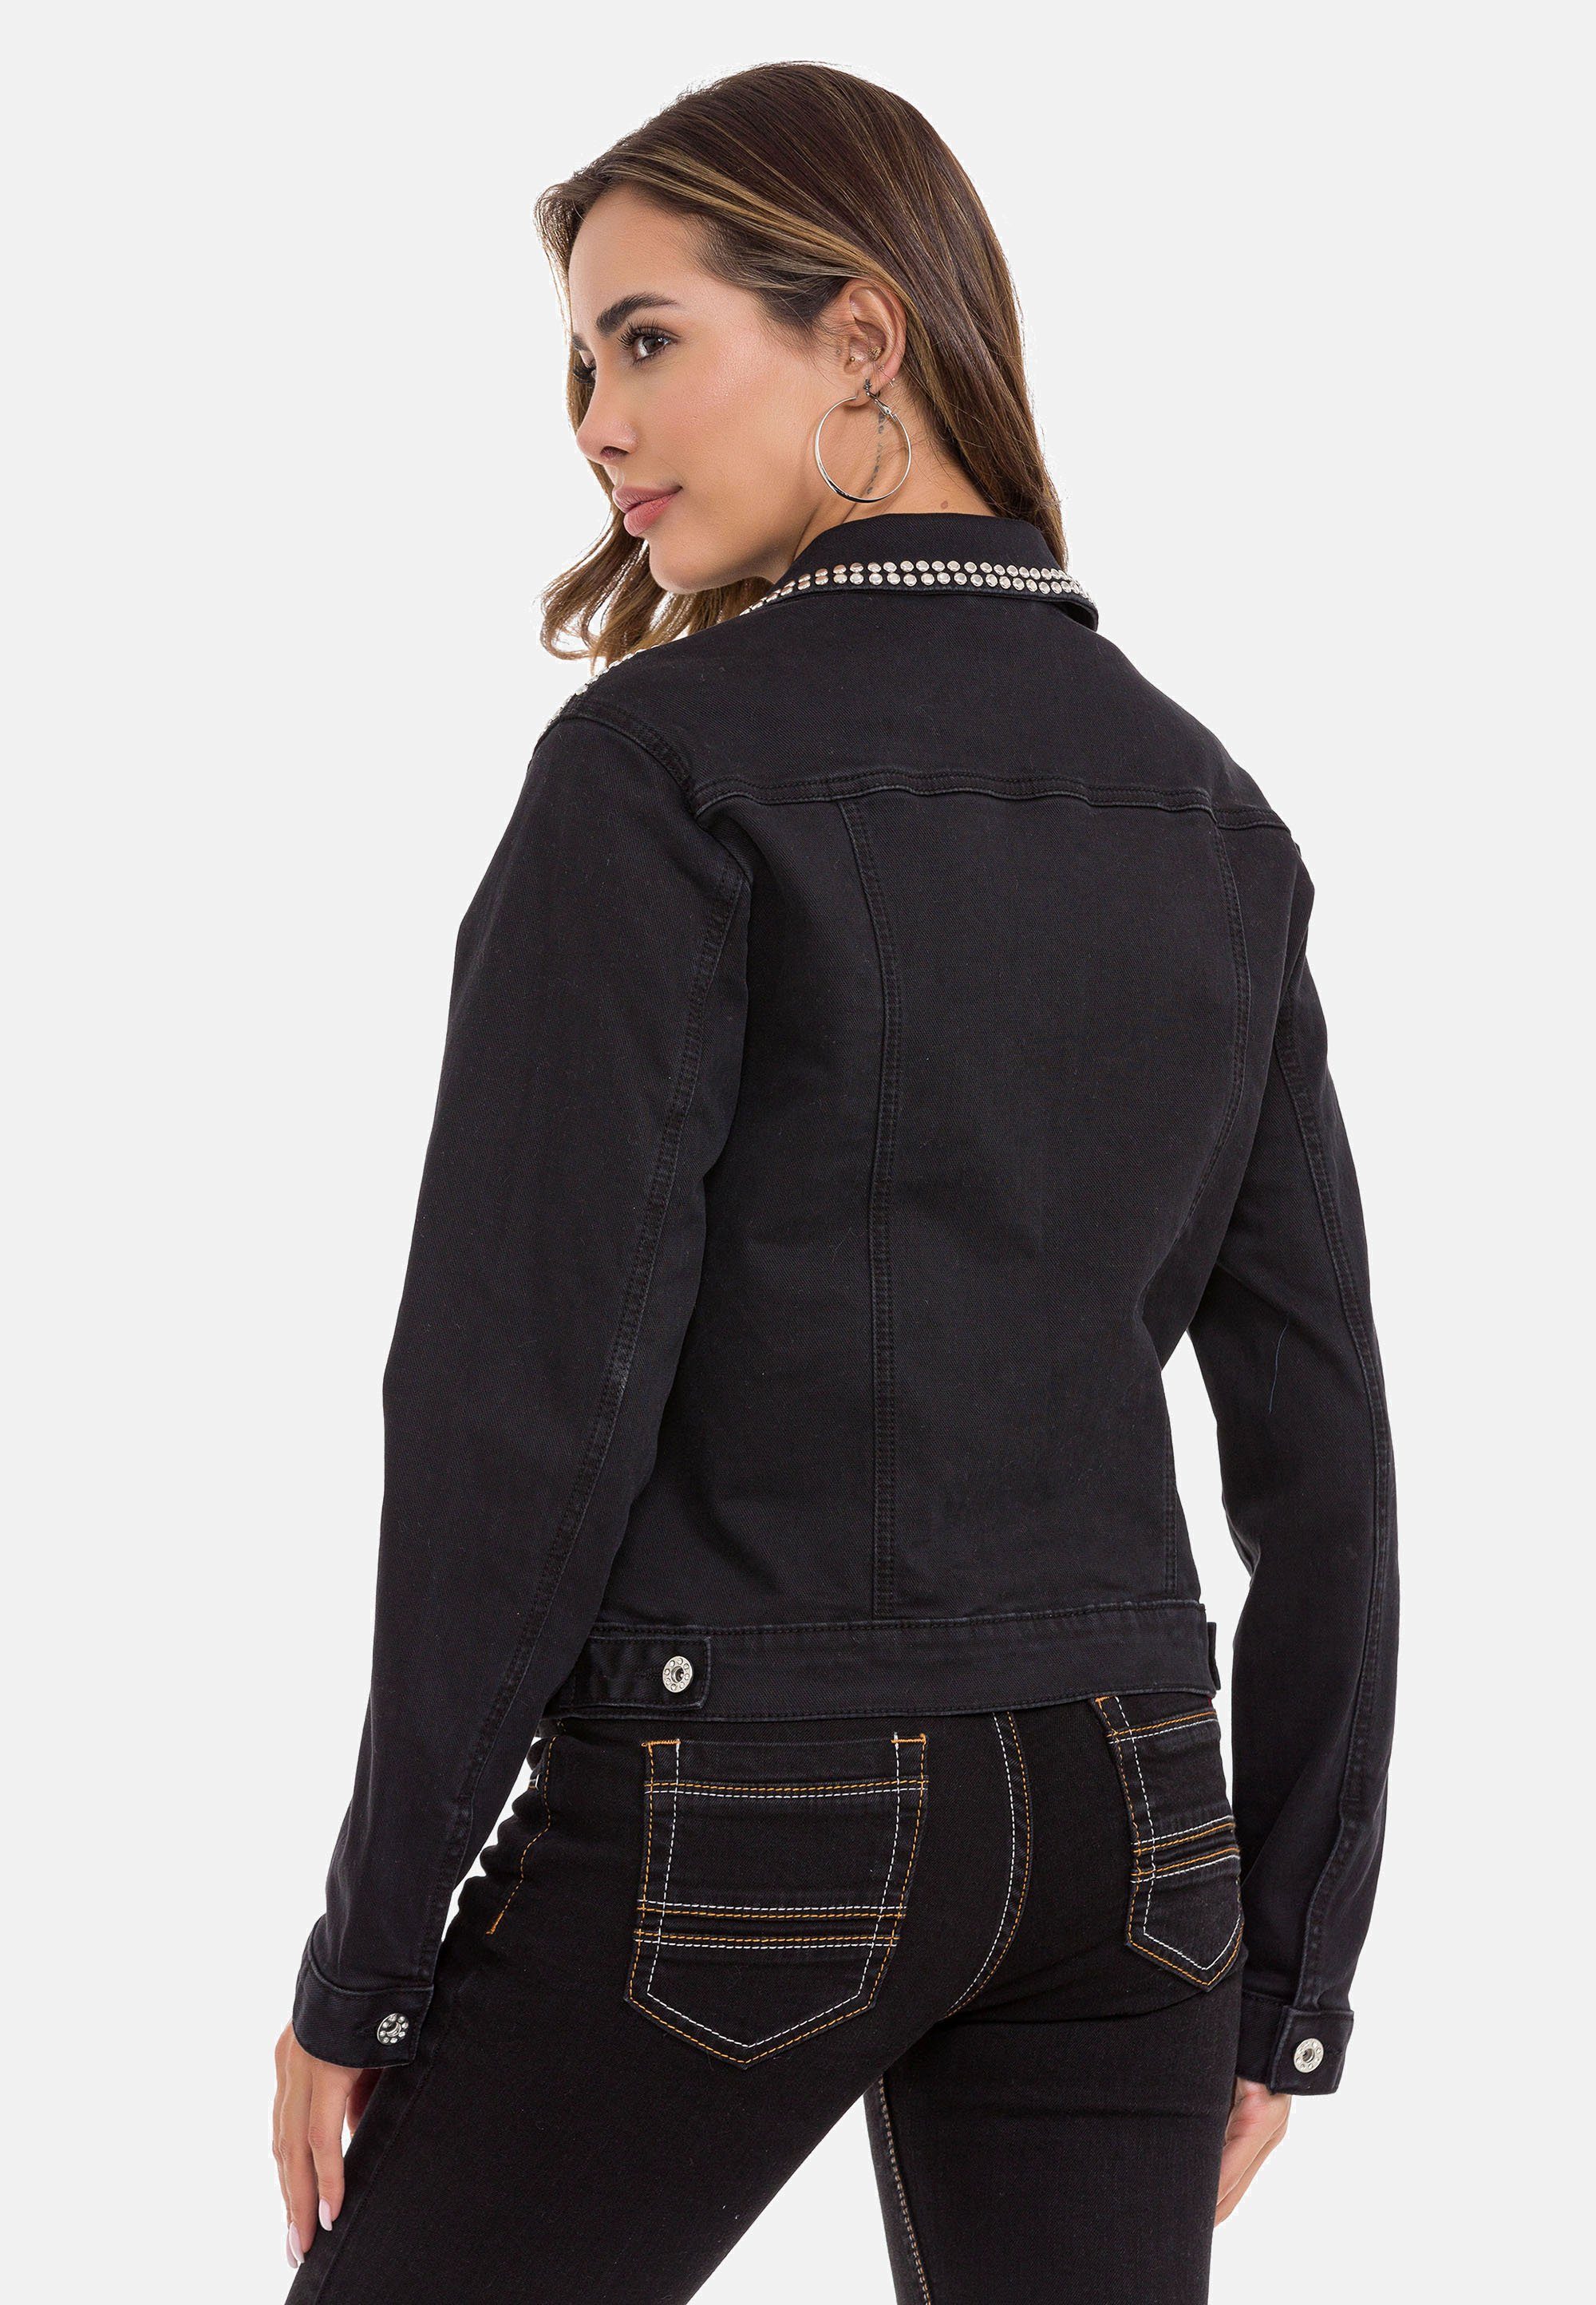 schwarz Jeansjacke mit Nieten-Details Baxx & modernen Cipo